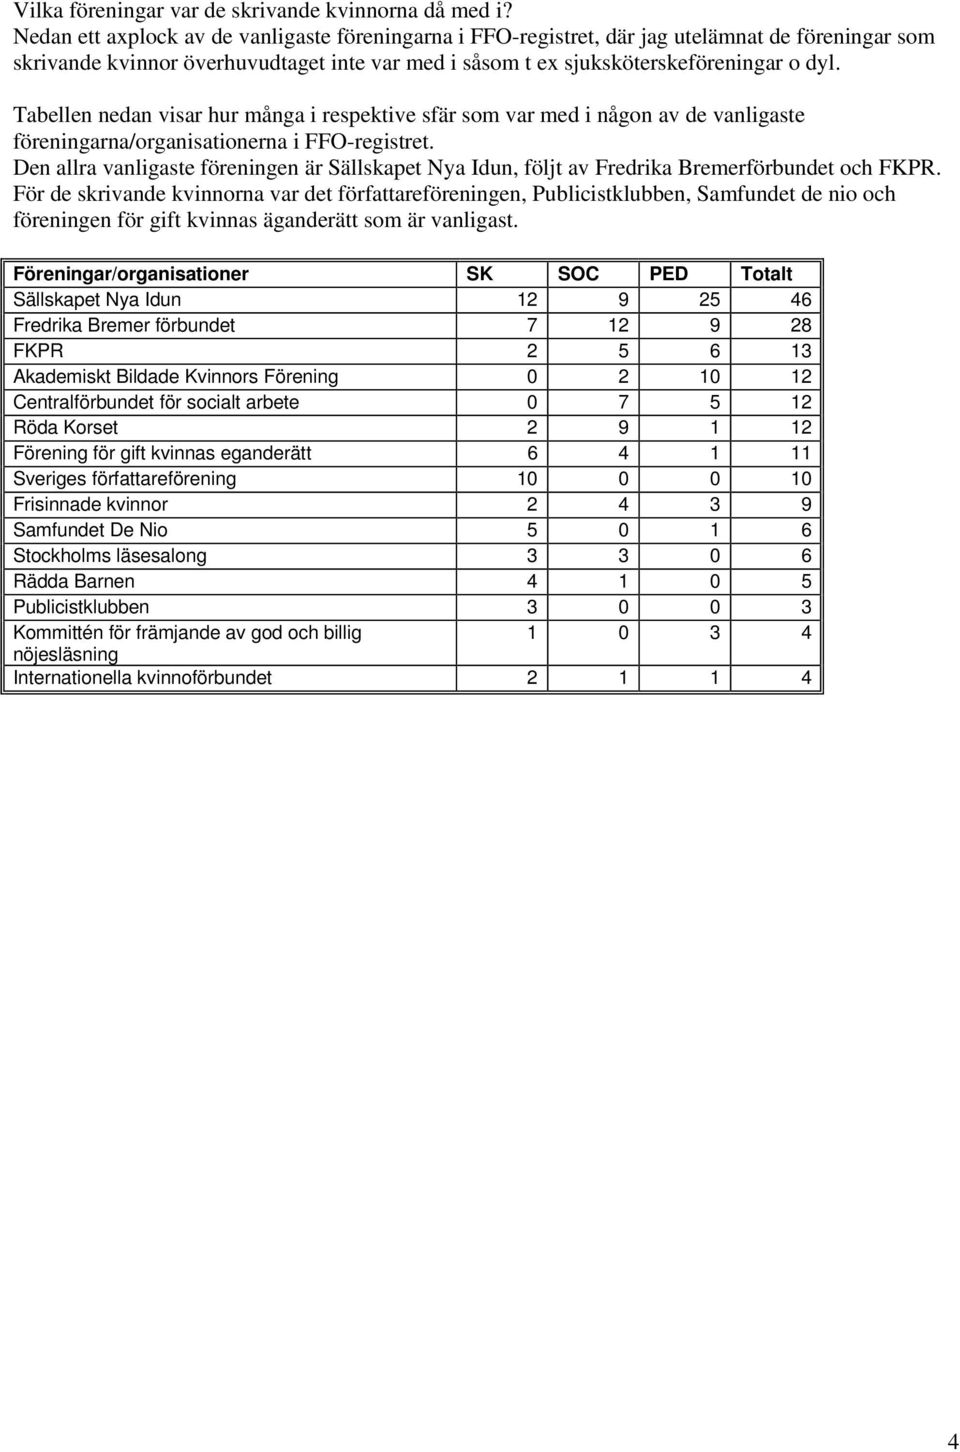 Tabellen nedan visar hur många i respektive sfär som var med i någon av de vanligaste föreningarna/organisationerna i FFO-registret.